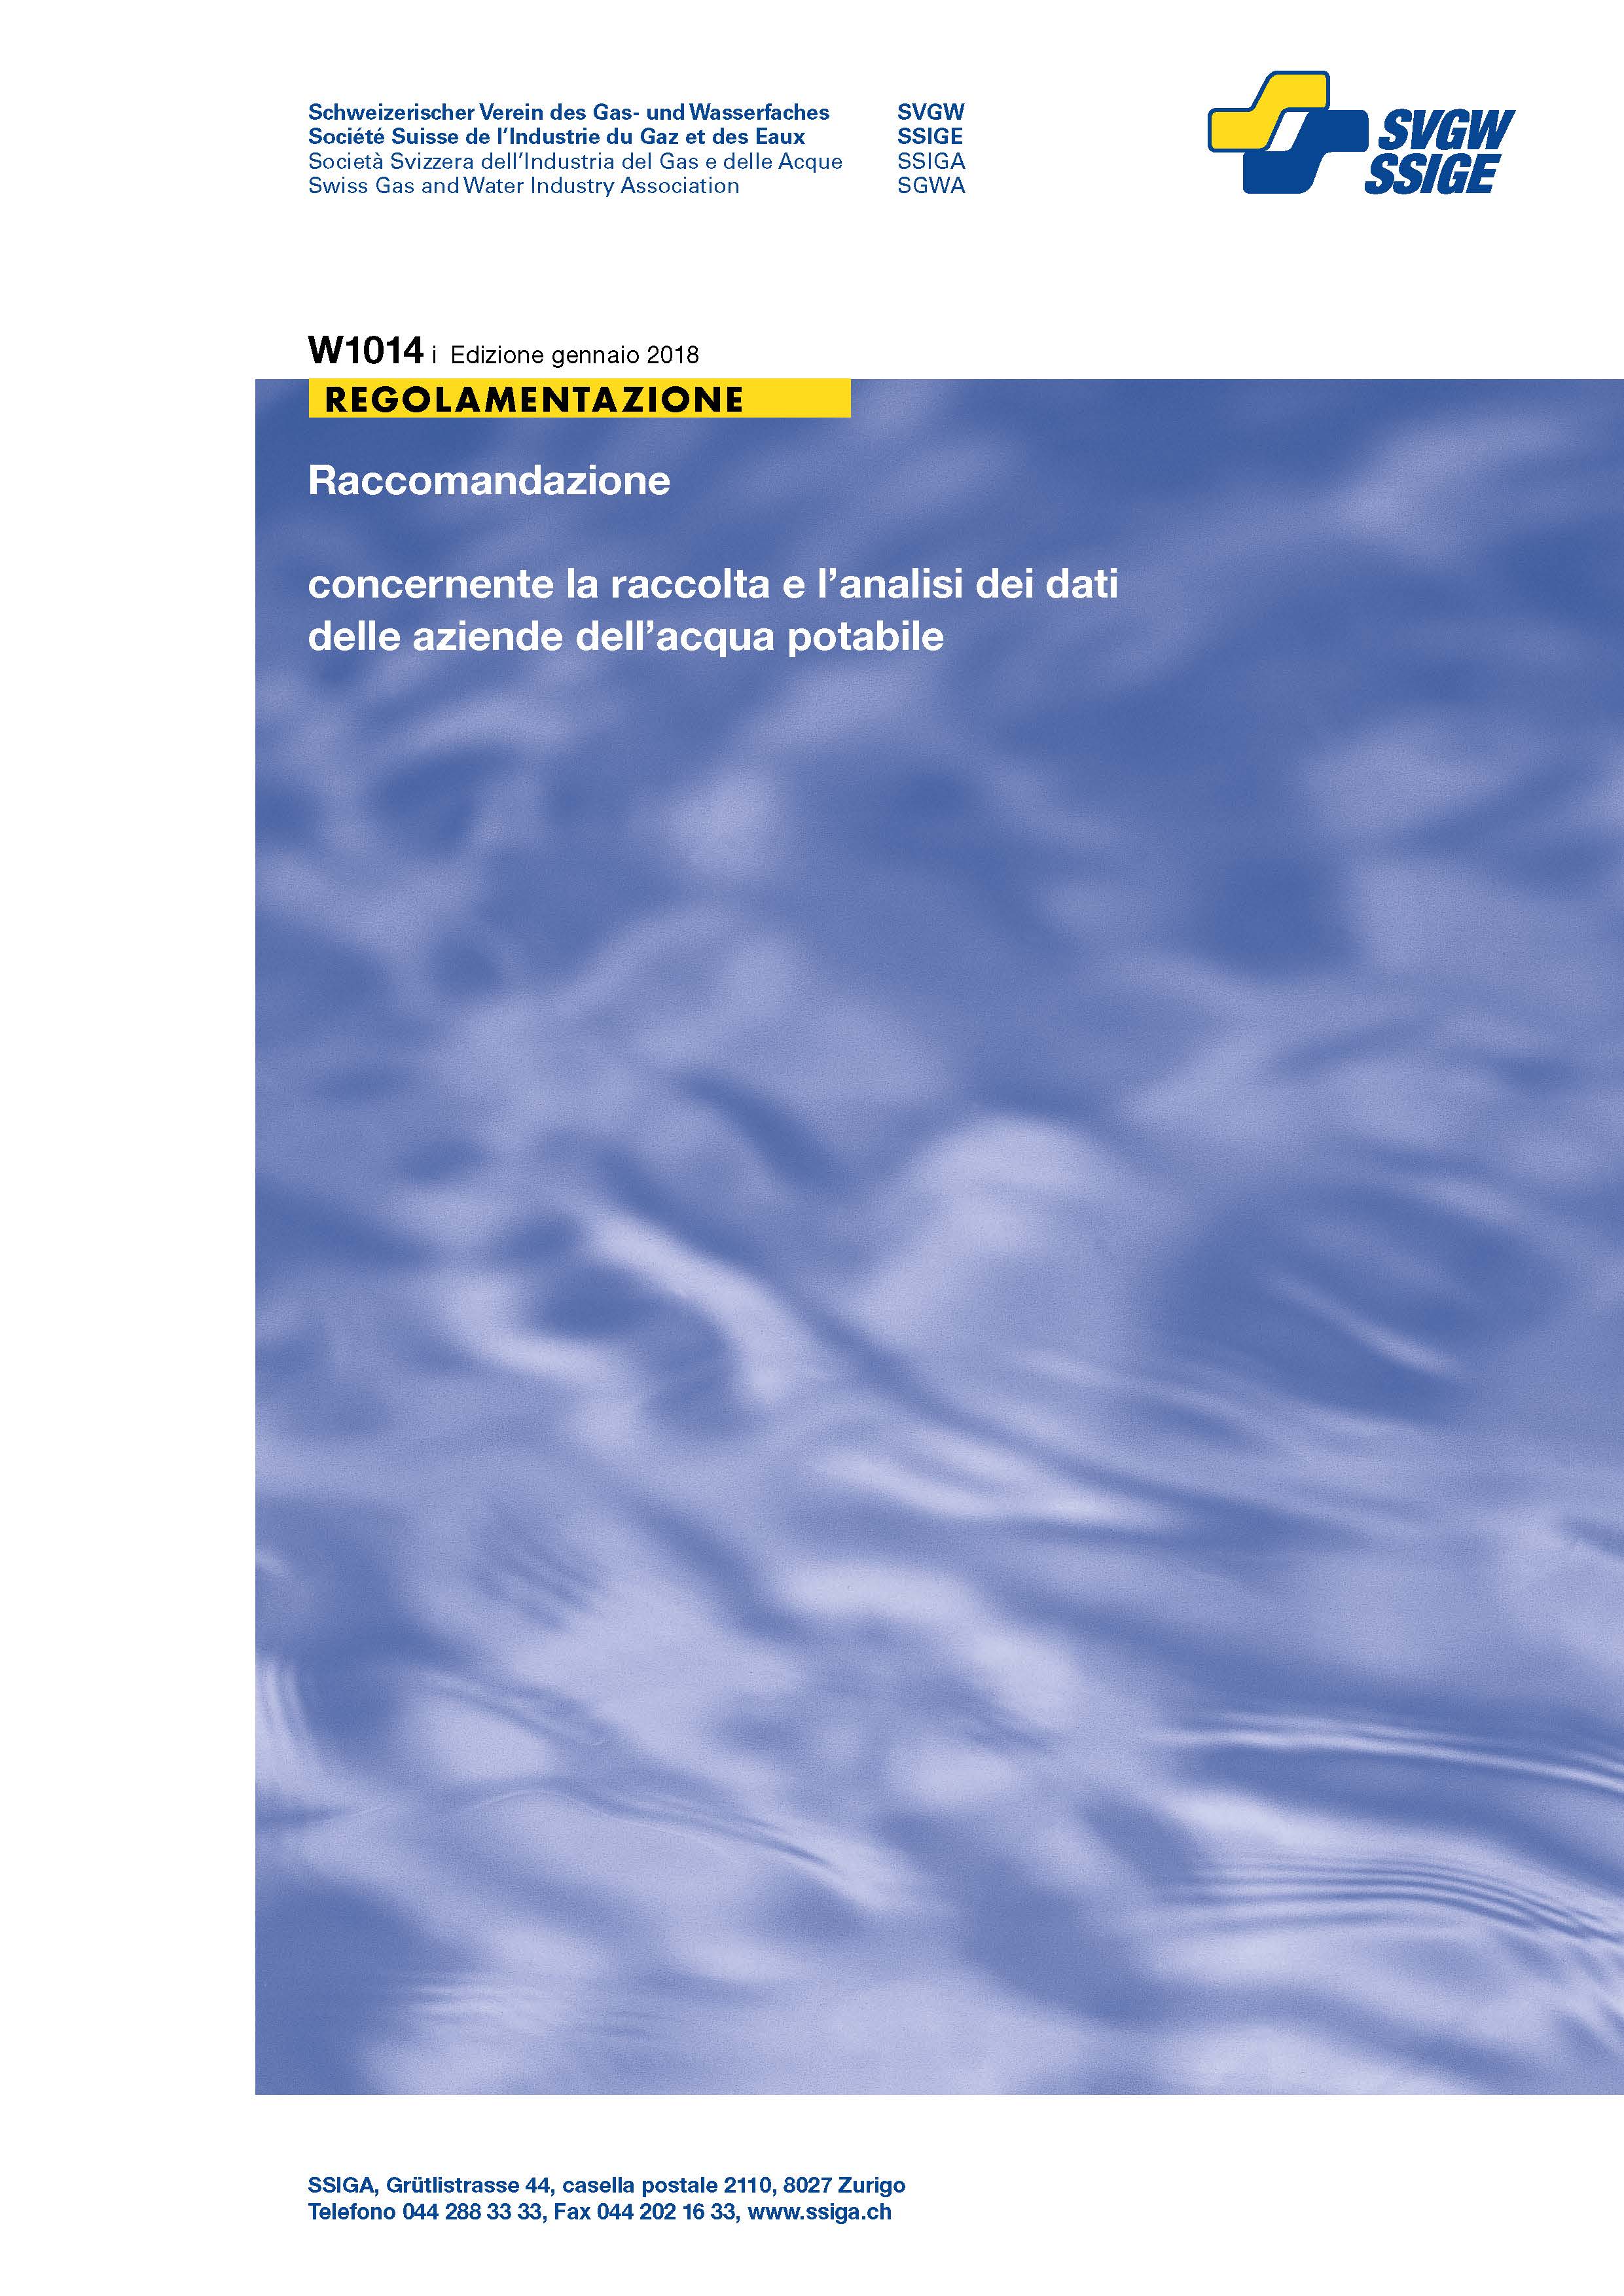 W1014 i Raccomandazione concernente la raccolta e l'analisi dei dati delle aziende dell'acqua potabile